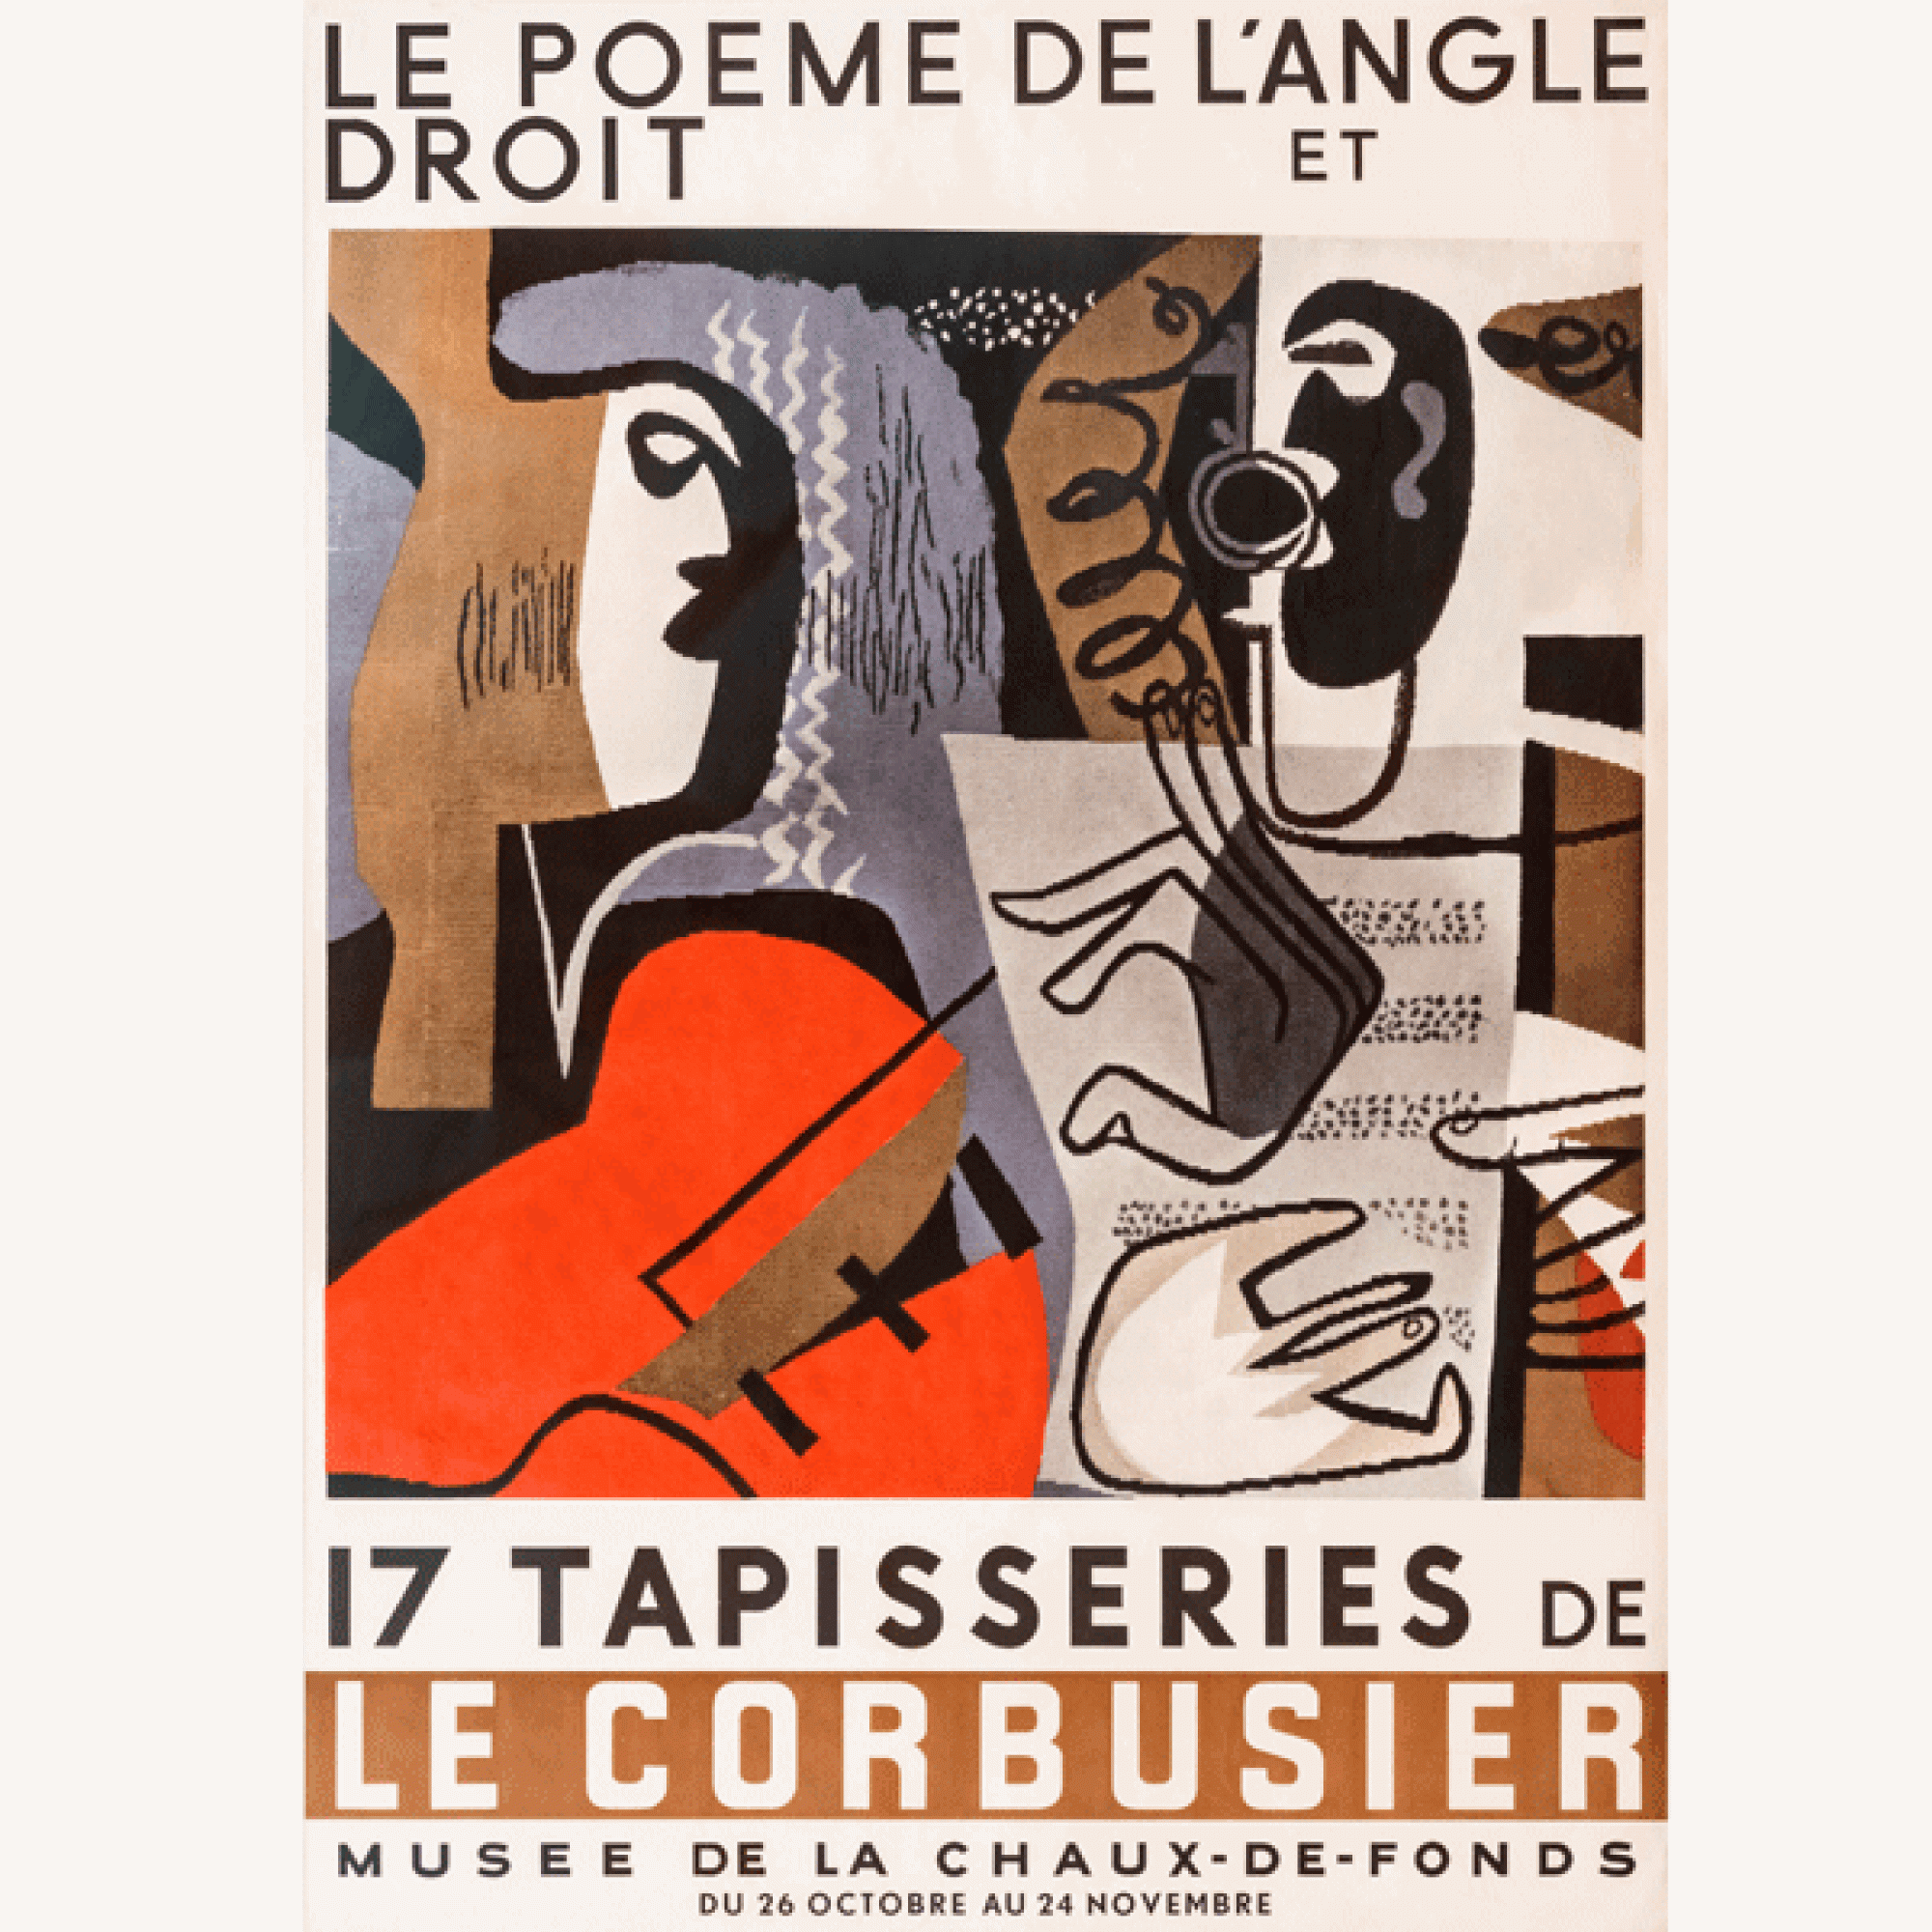 Le Corbusiers Künstlerplakat, das er anlässlich seiner Ausstellung 1957 in seiner Heimatstadt La Chaux-de-Fonds entworfen hatte. (Bild: © FLC/2017, ProLitteris, Zurich)